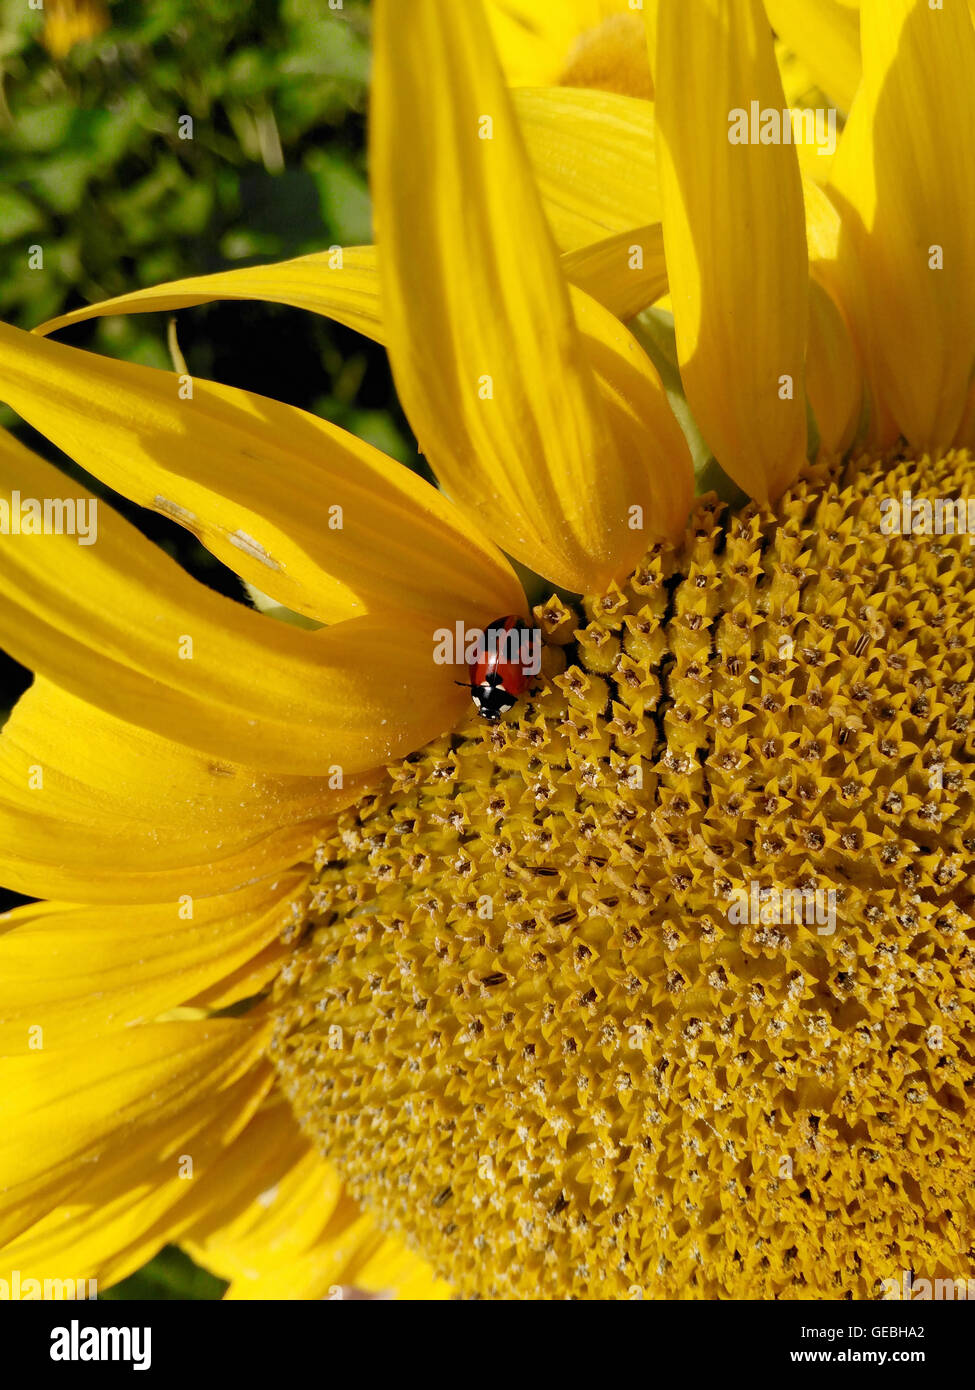 Das Insekt sitzt auf einer gelben Blume Stockfoto